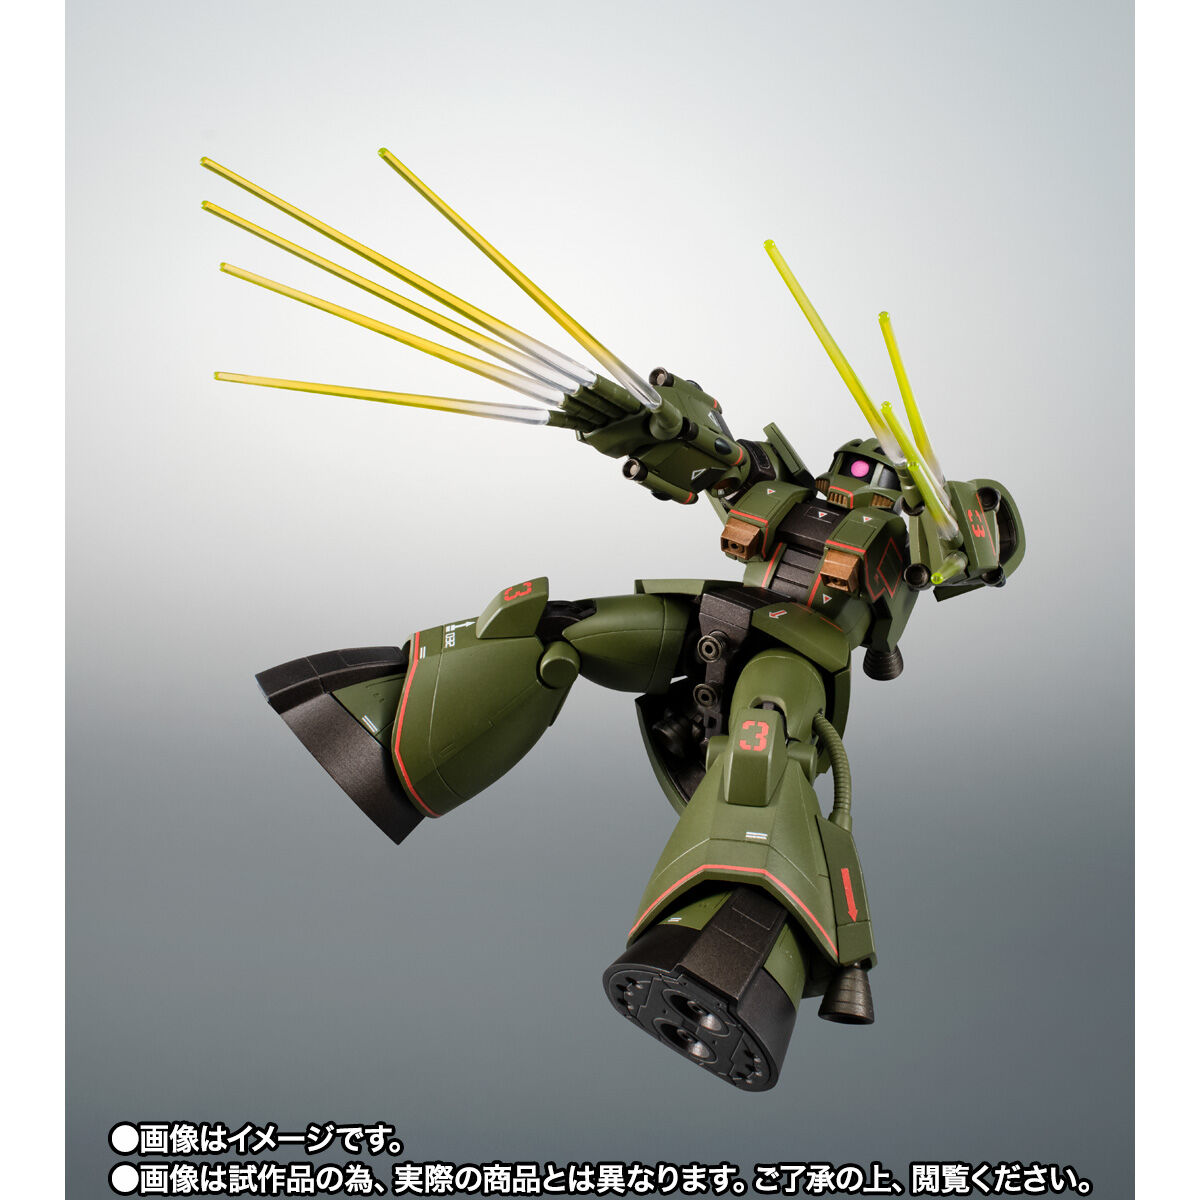 【限定販売】ROBOT魂〈SIDE MS〉『MS-06Z サイコミュ試験用ザク ver. A.N.I.M.E.』機動戦士ガンダム MSV 可動フィギュア-006